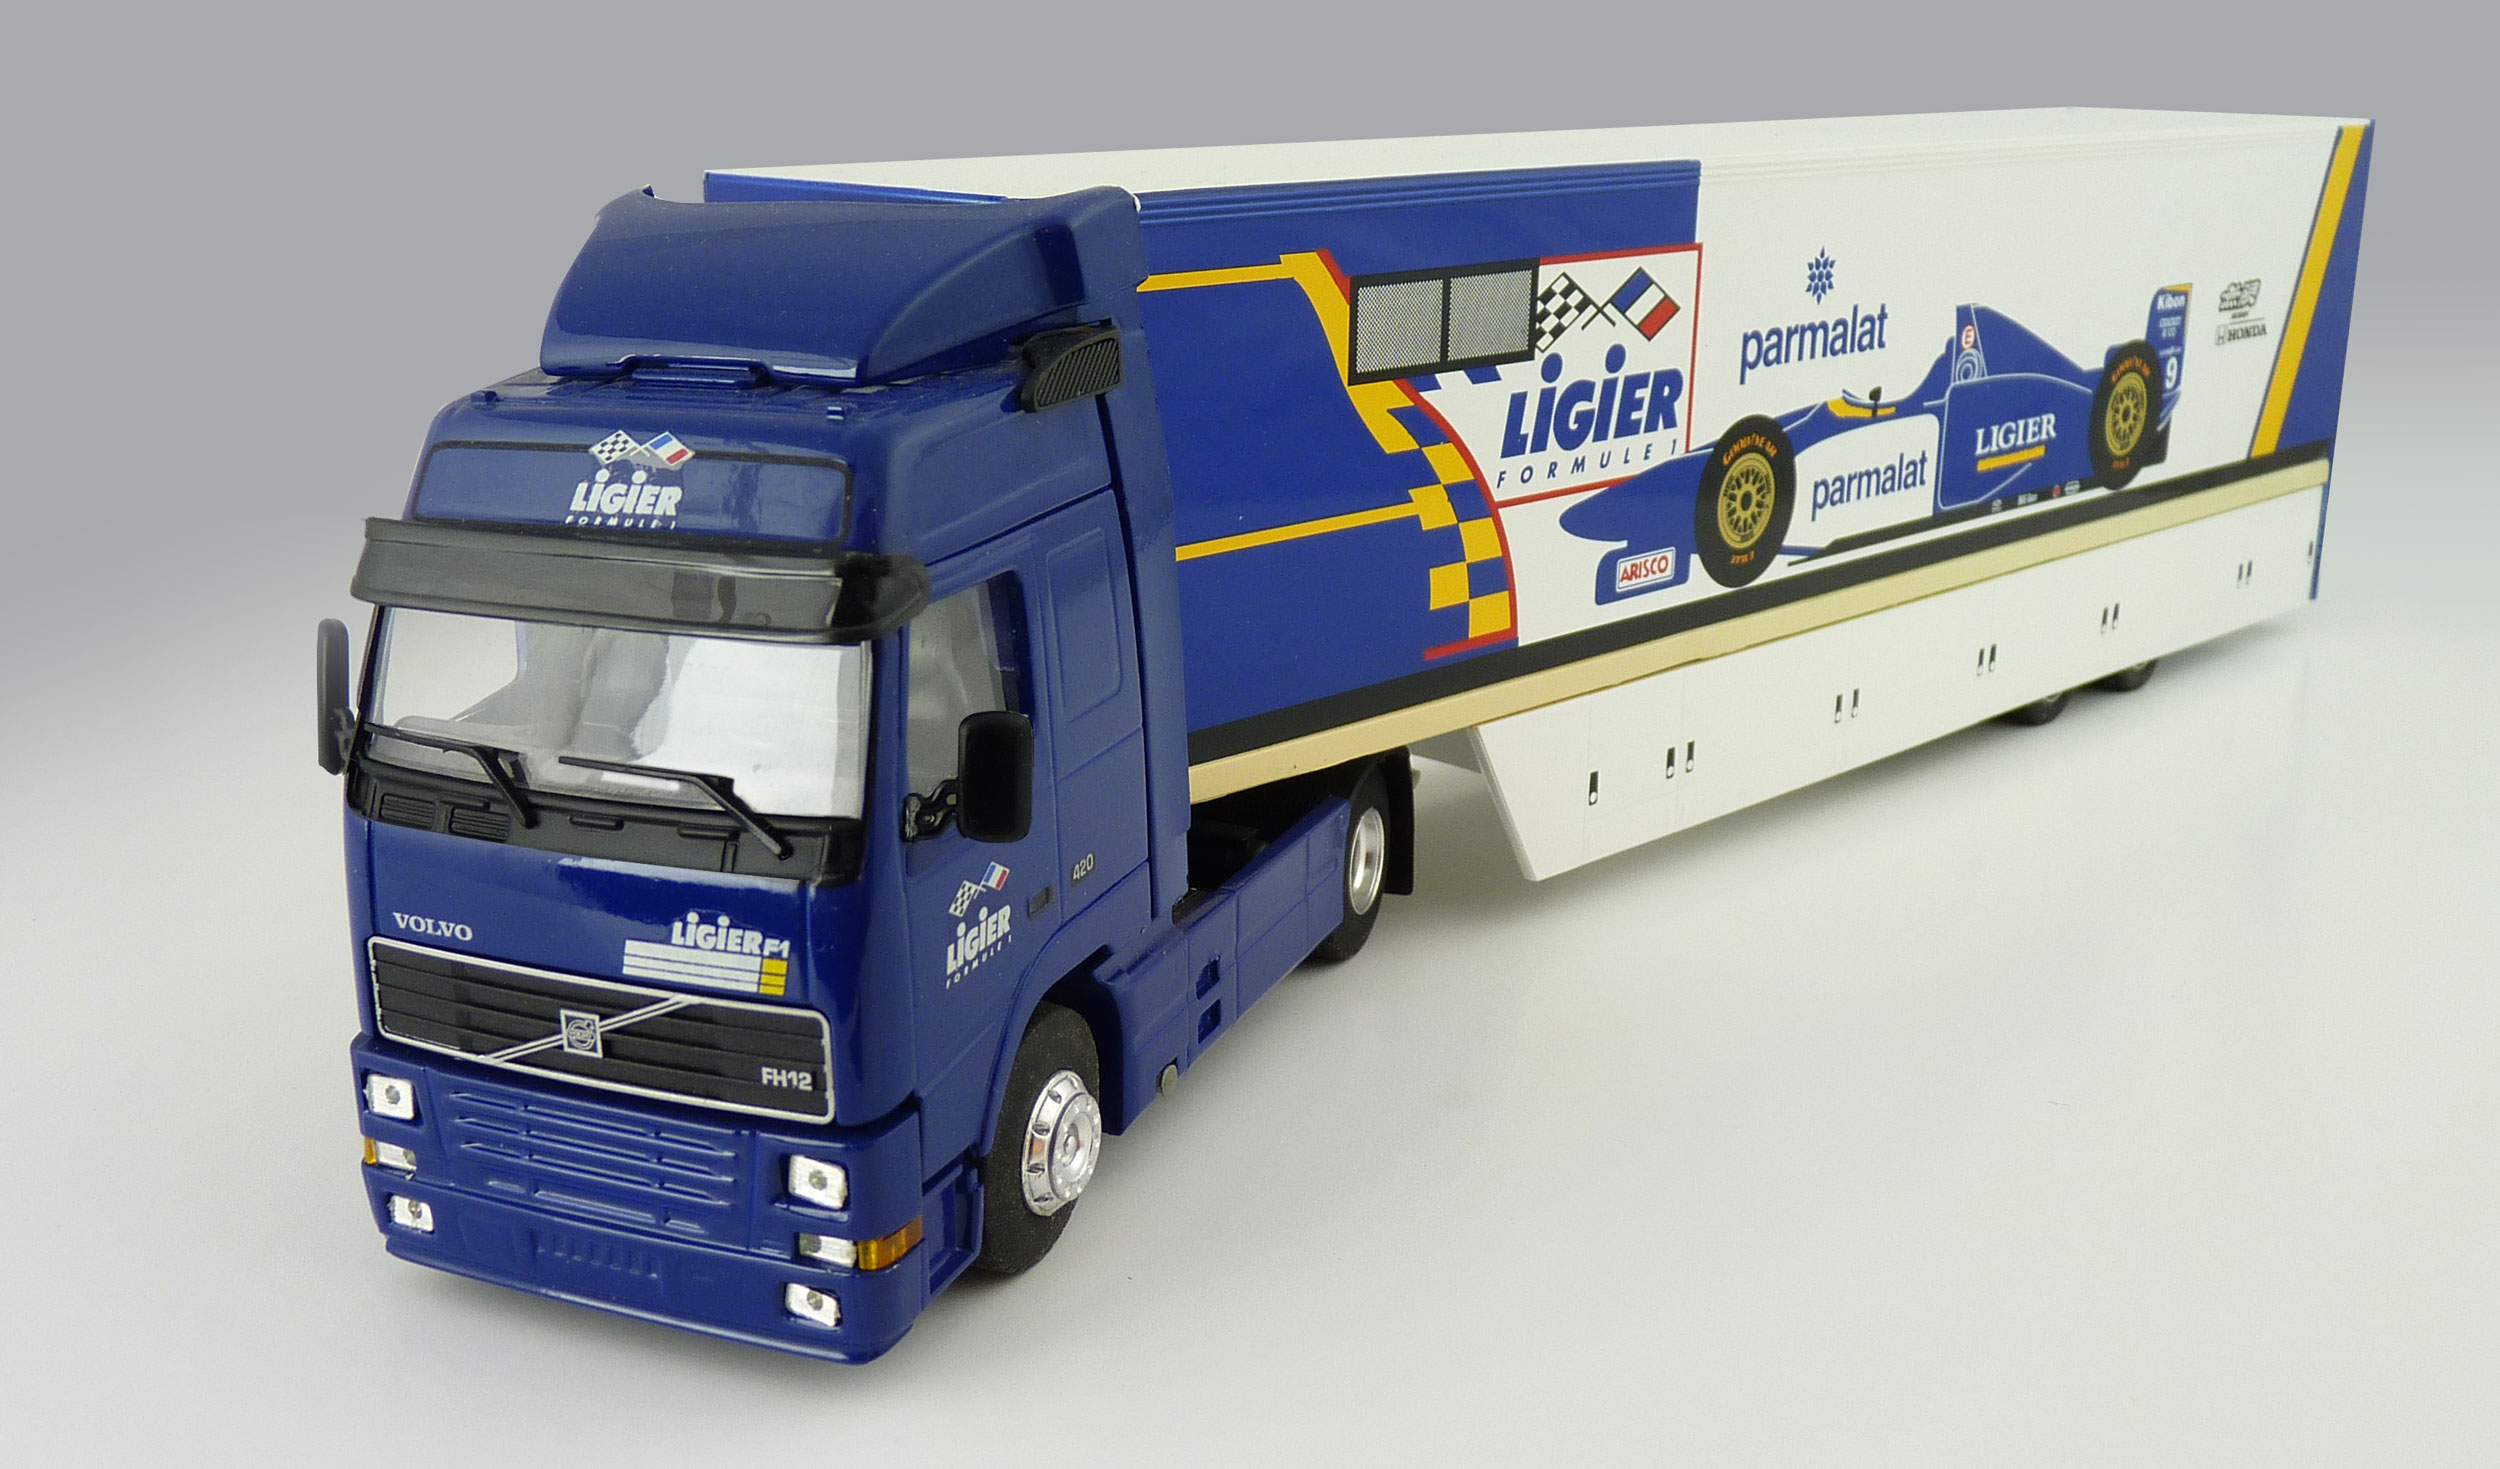 Eligor Ligier Transporter Truck